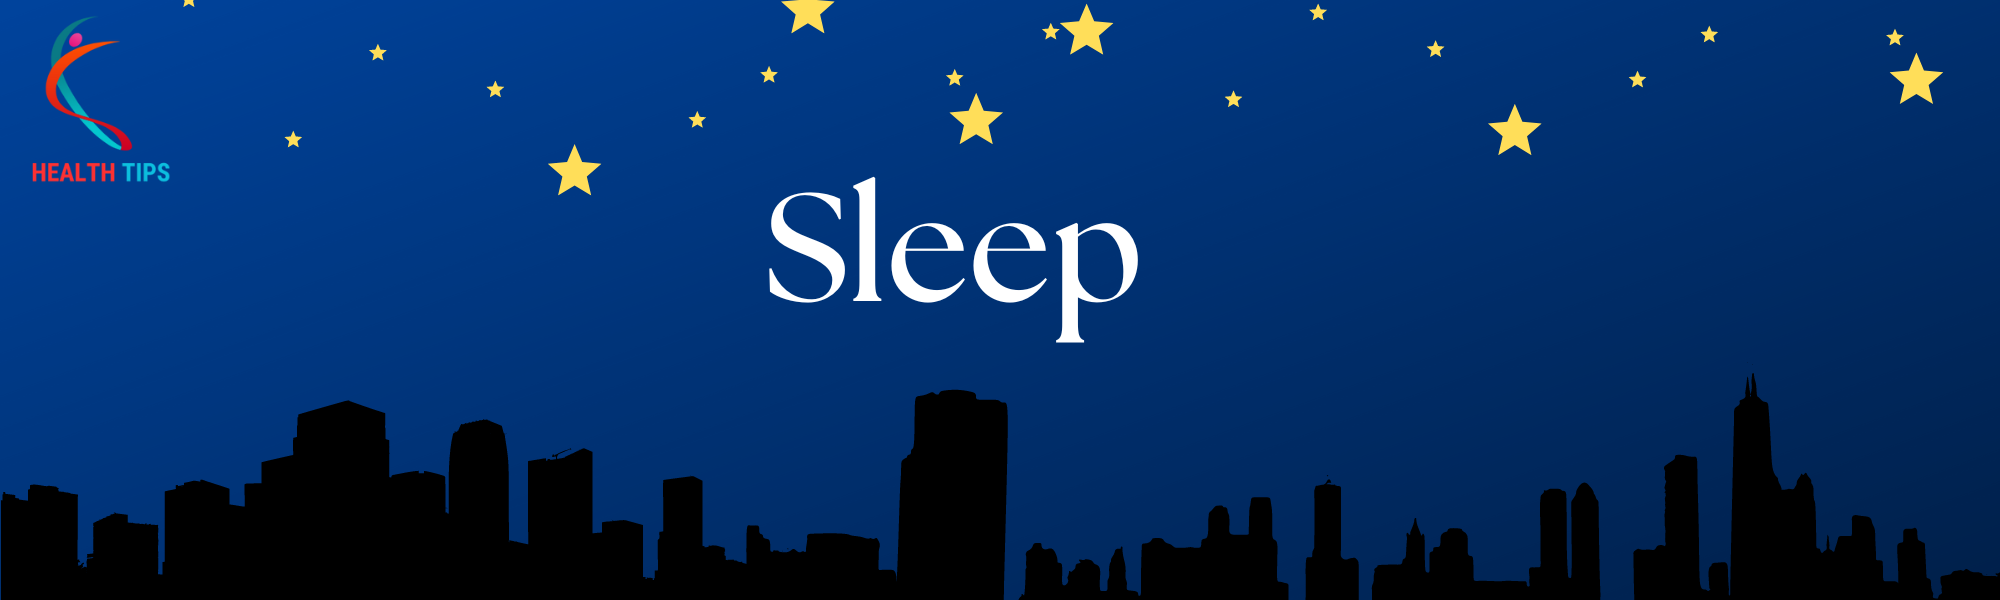 Sleep _ Health Tips for All